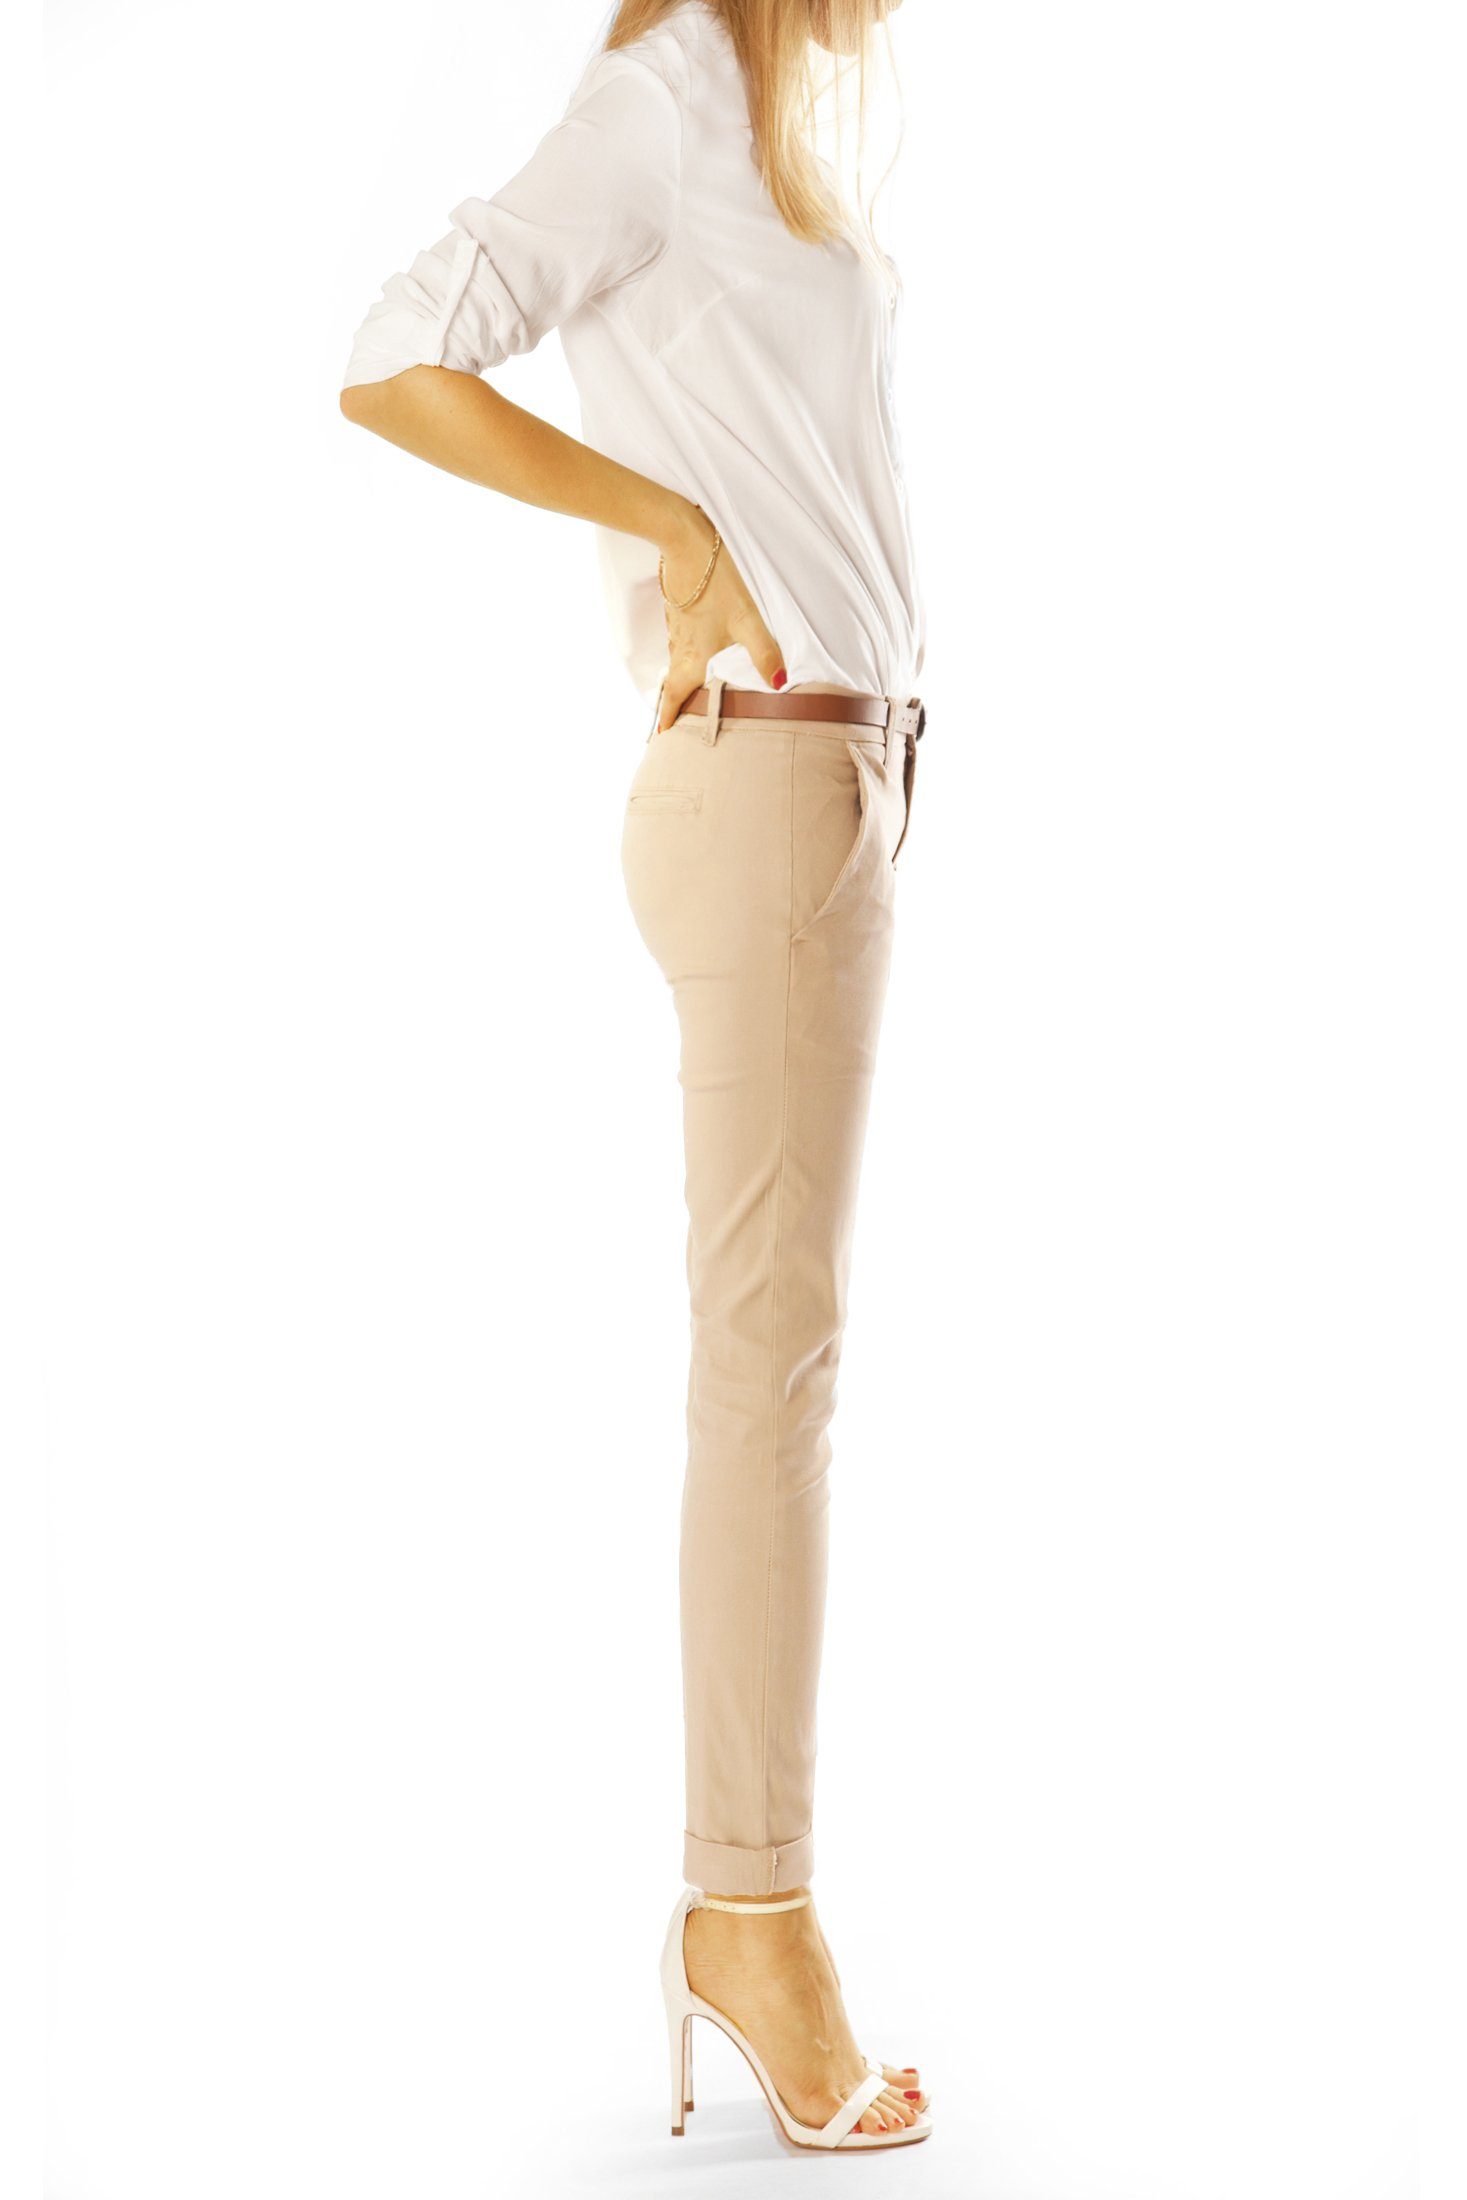 mit - Unifarben Hüftige styled Hose beige Stretch, j10m-3 - Stoffhosen Hüfthosen in be Damen Chino Chinohose